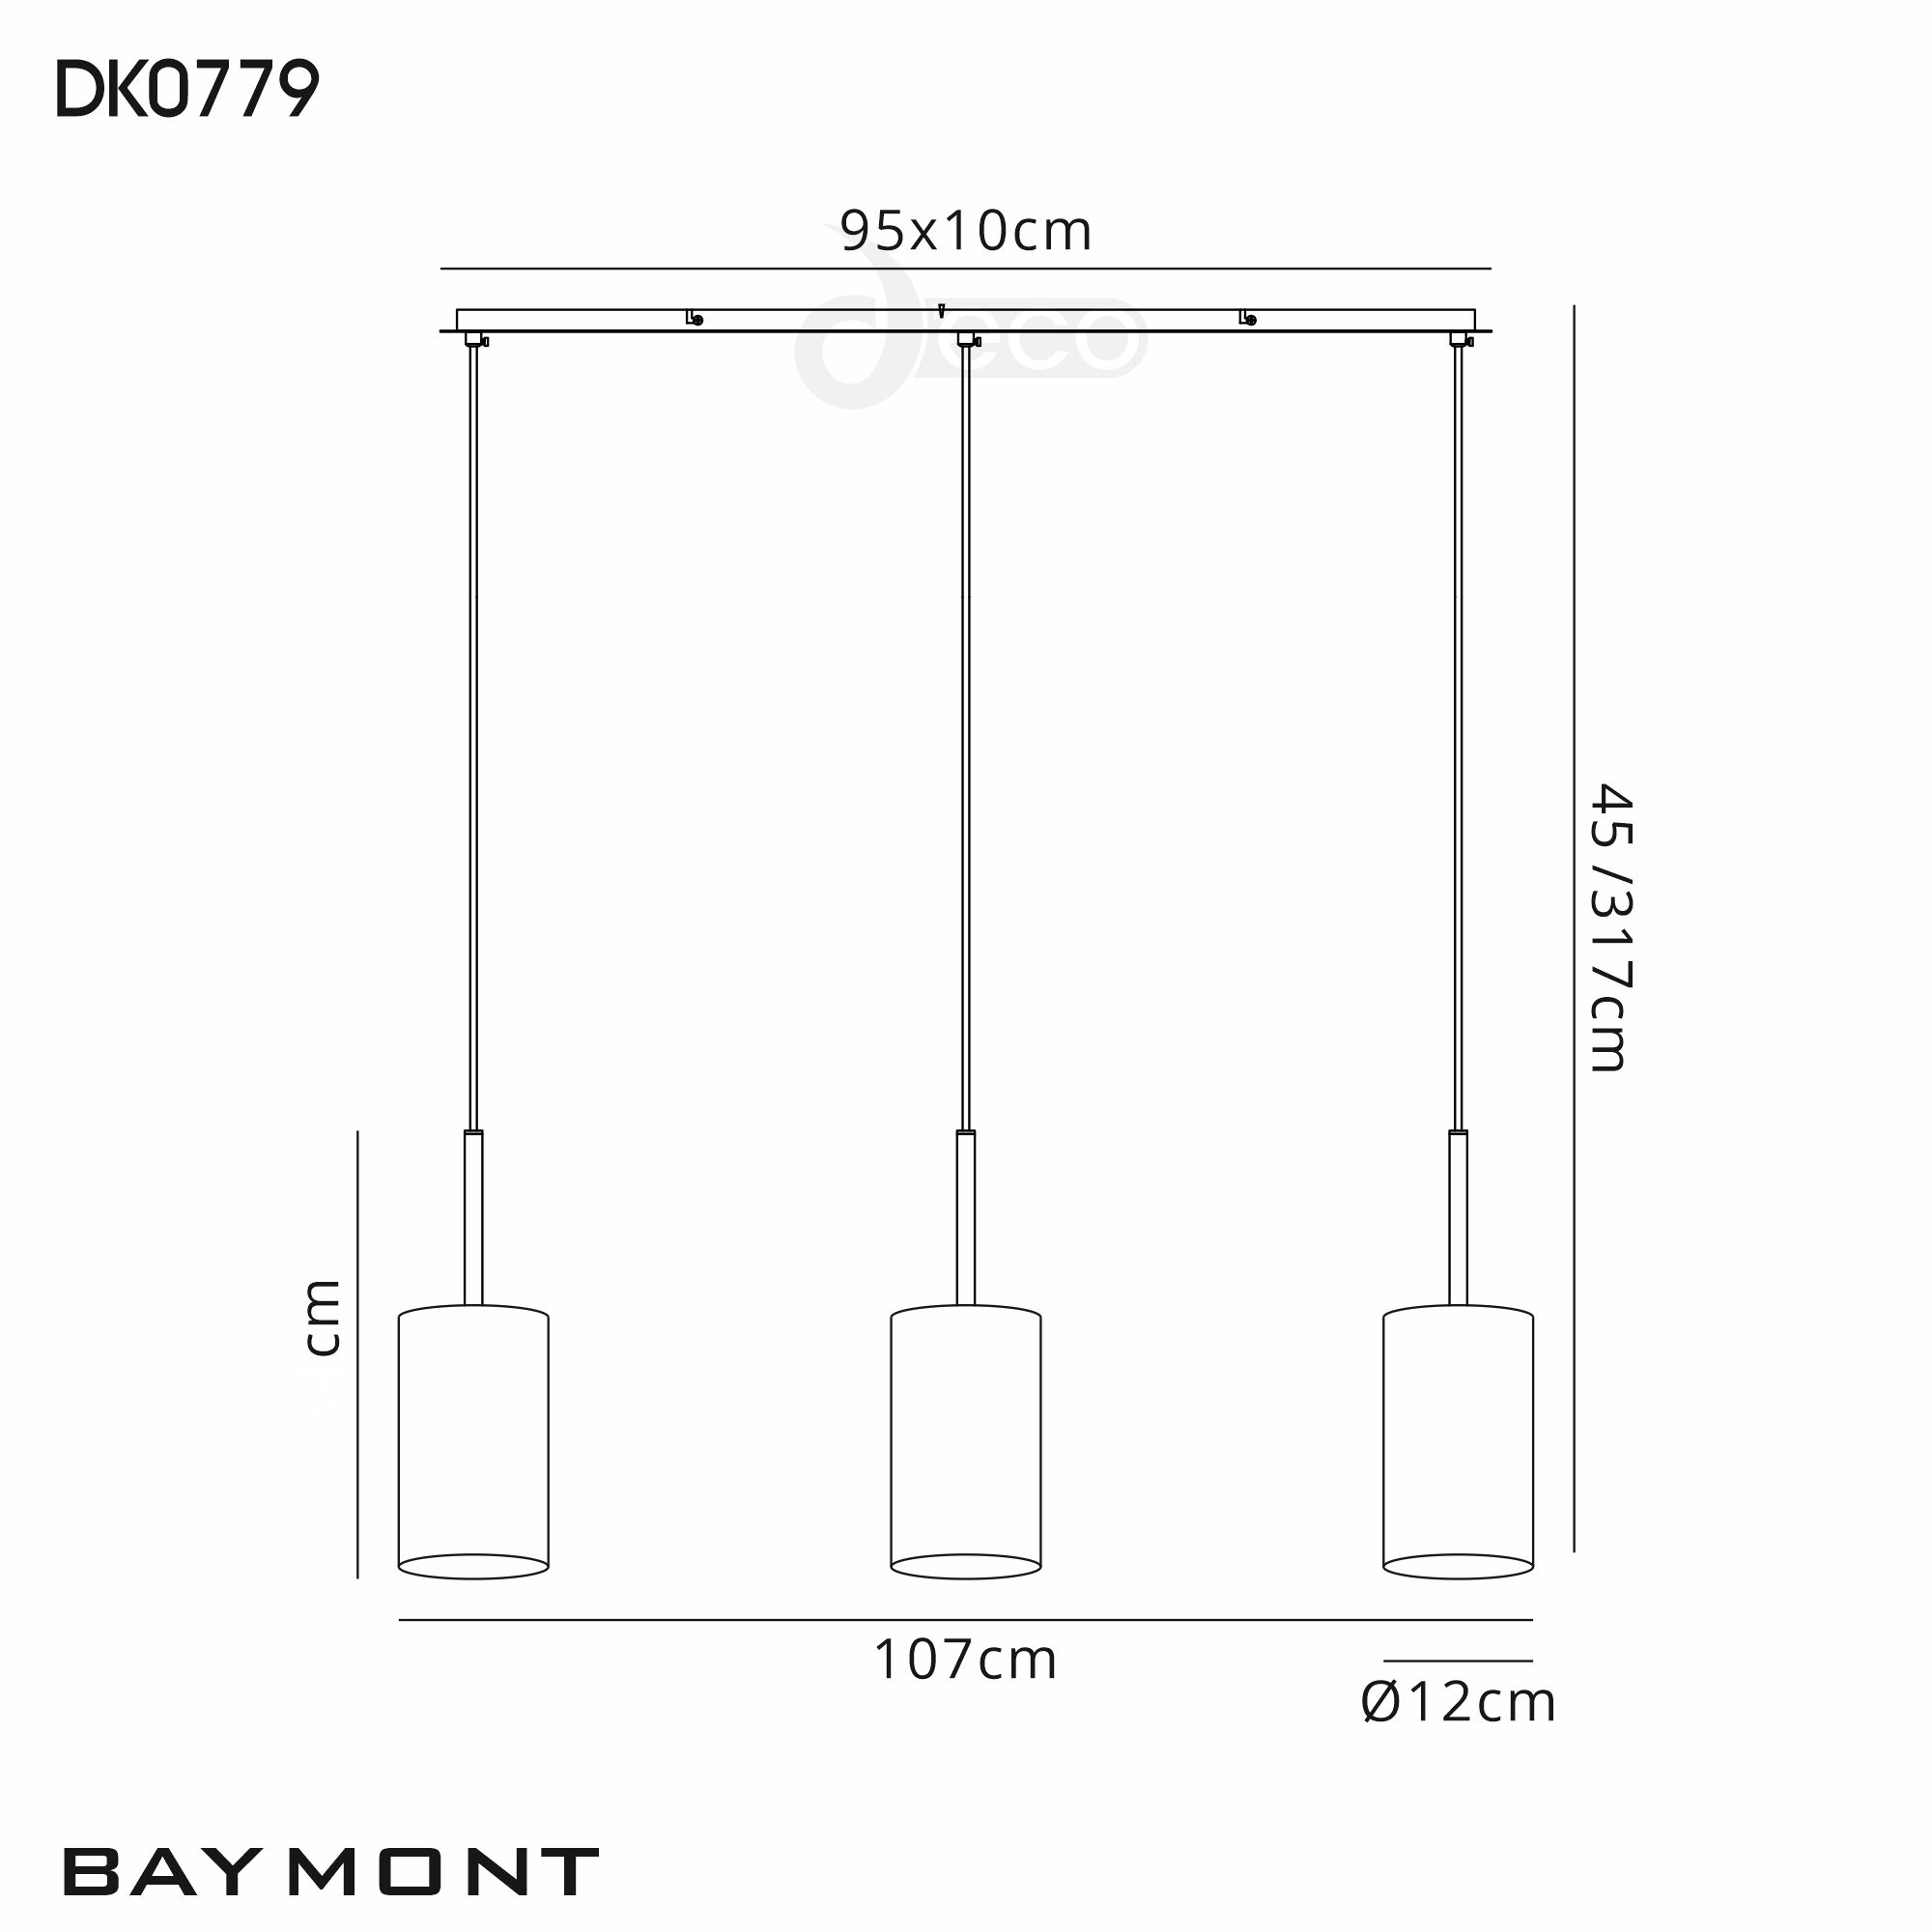 DK0779  Baymont 12cm Shade 3 Light Pendant Satin Nickel, Black/White